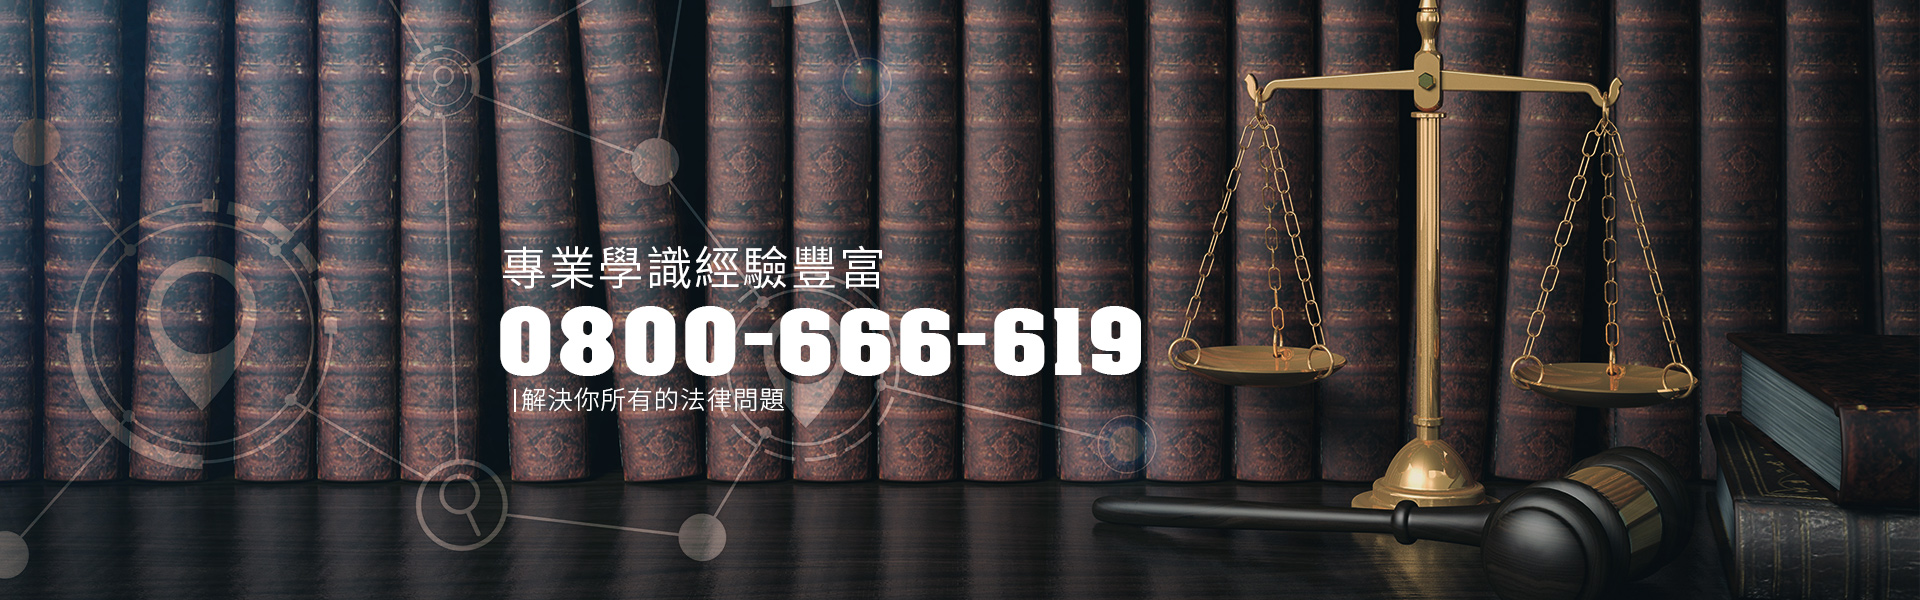 台北法律推薦|法律諮詢、民刑事